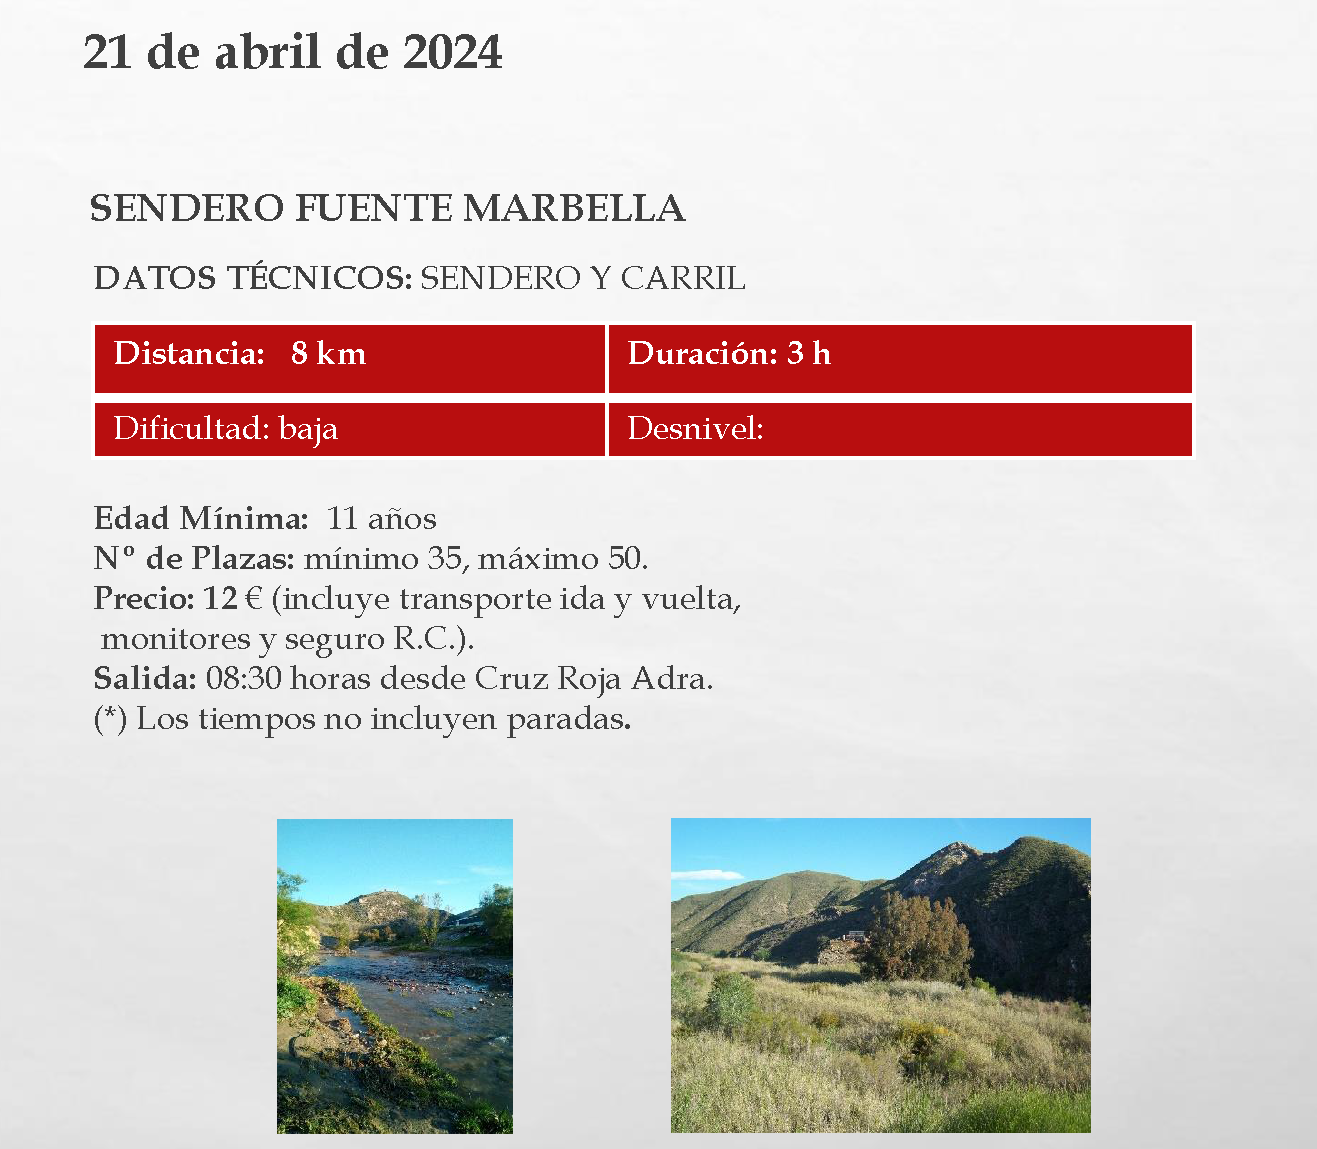 Continúa la programación de ‘Adra en la Senda’ con el sendero Fuente Marbella el 21 de abril